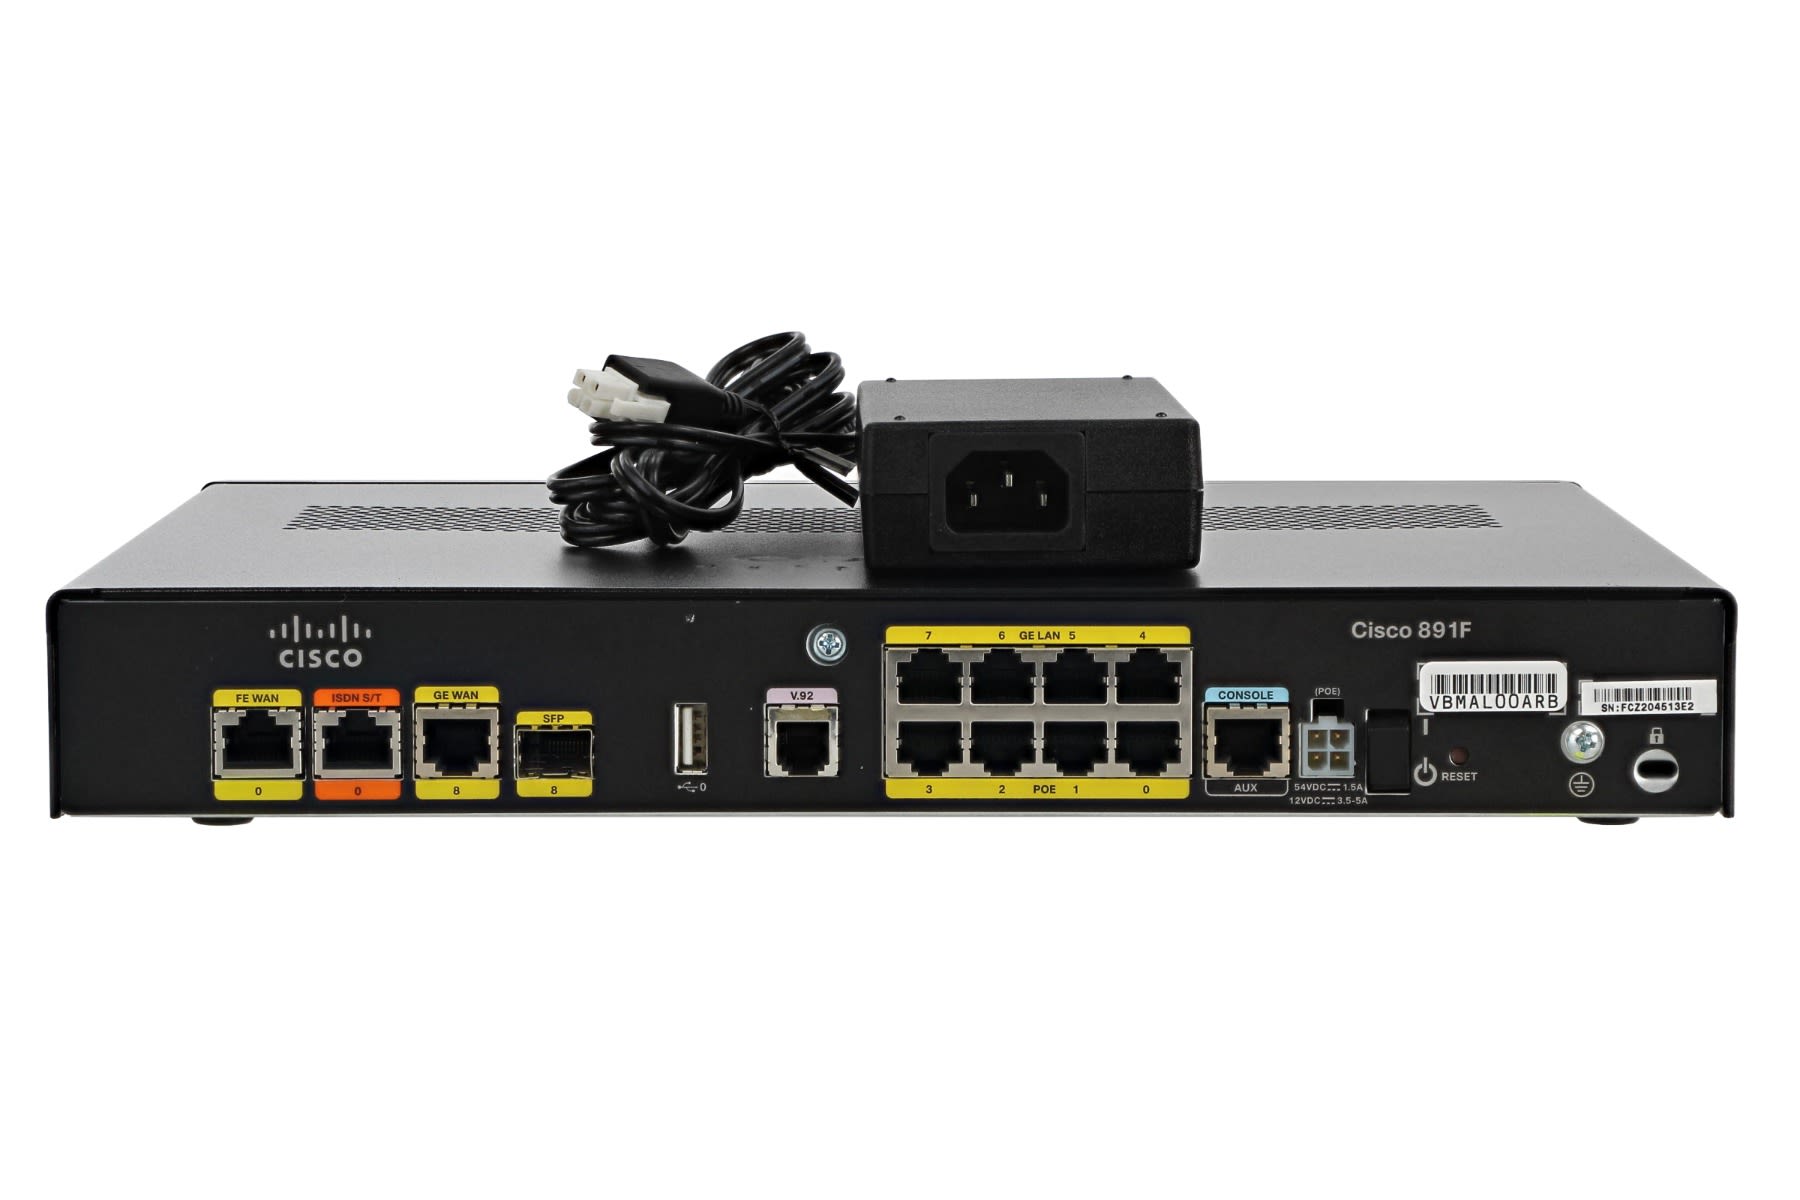 Reparatie mogelijk niezen moeilijk Cisco C891F-K9 Security Router